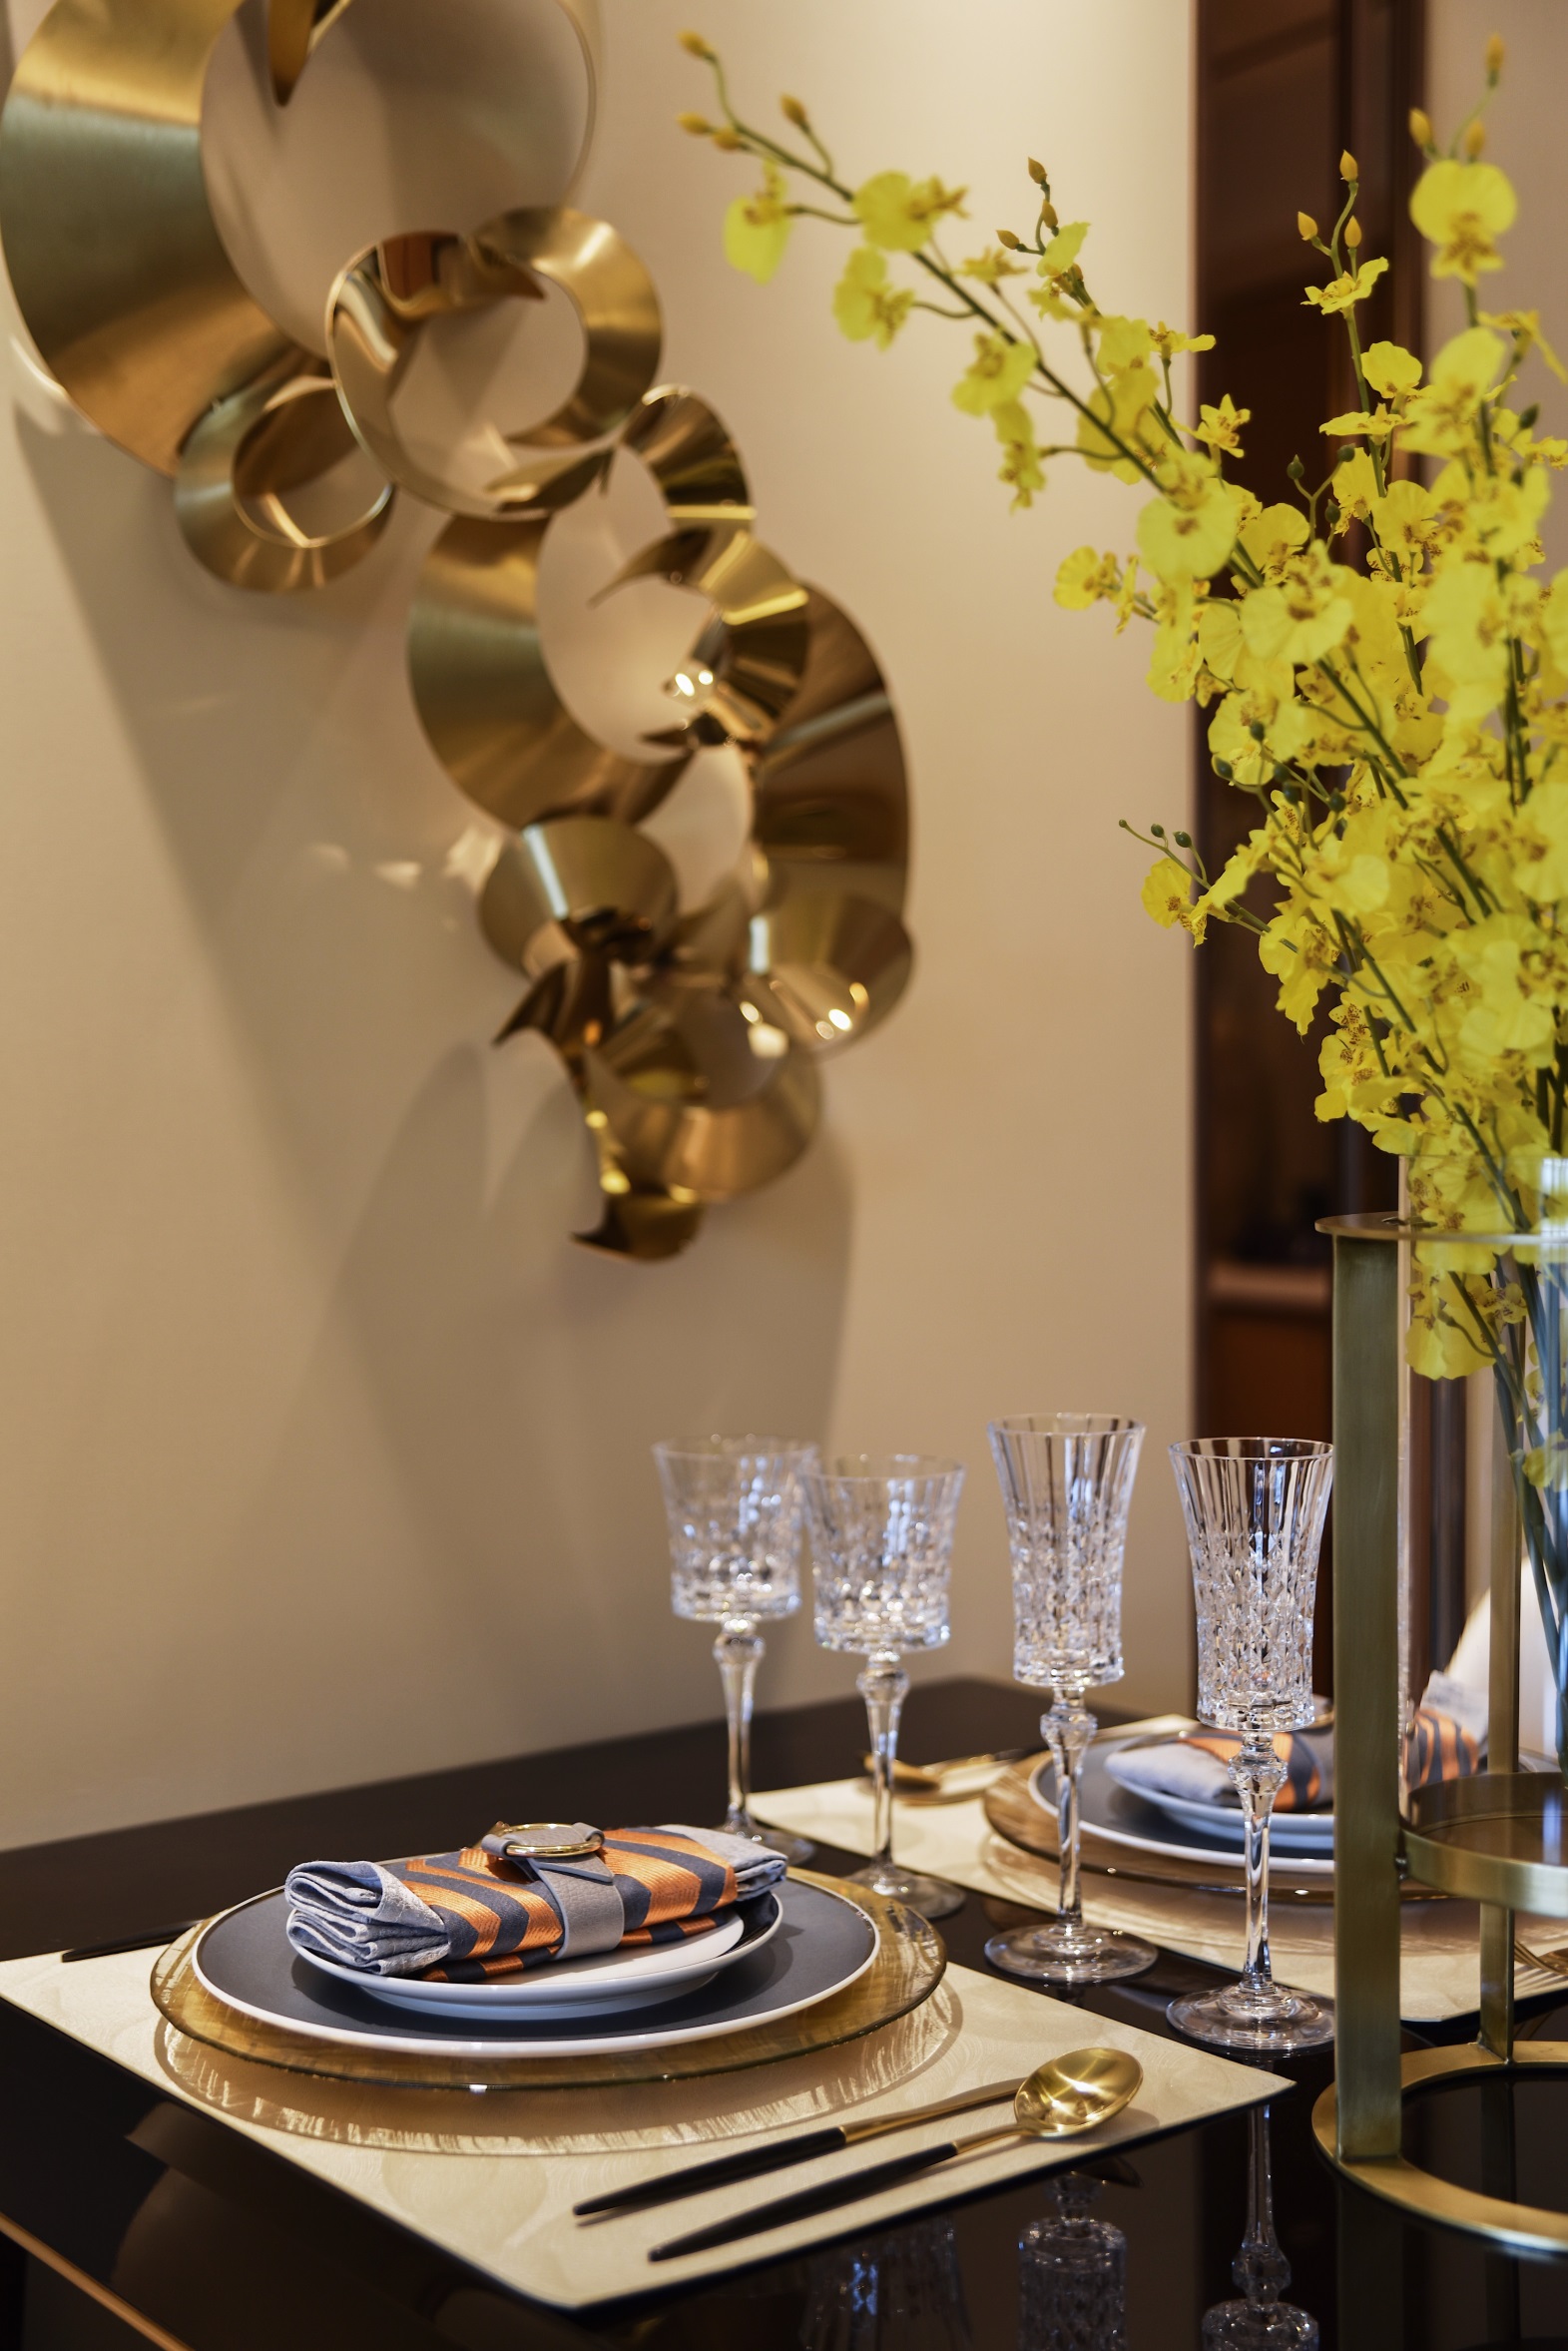 精致餐具增加了空间的时尚感和底蕴，金属元素裹挟着一份克制，呈现出松弛有度用餐空间。